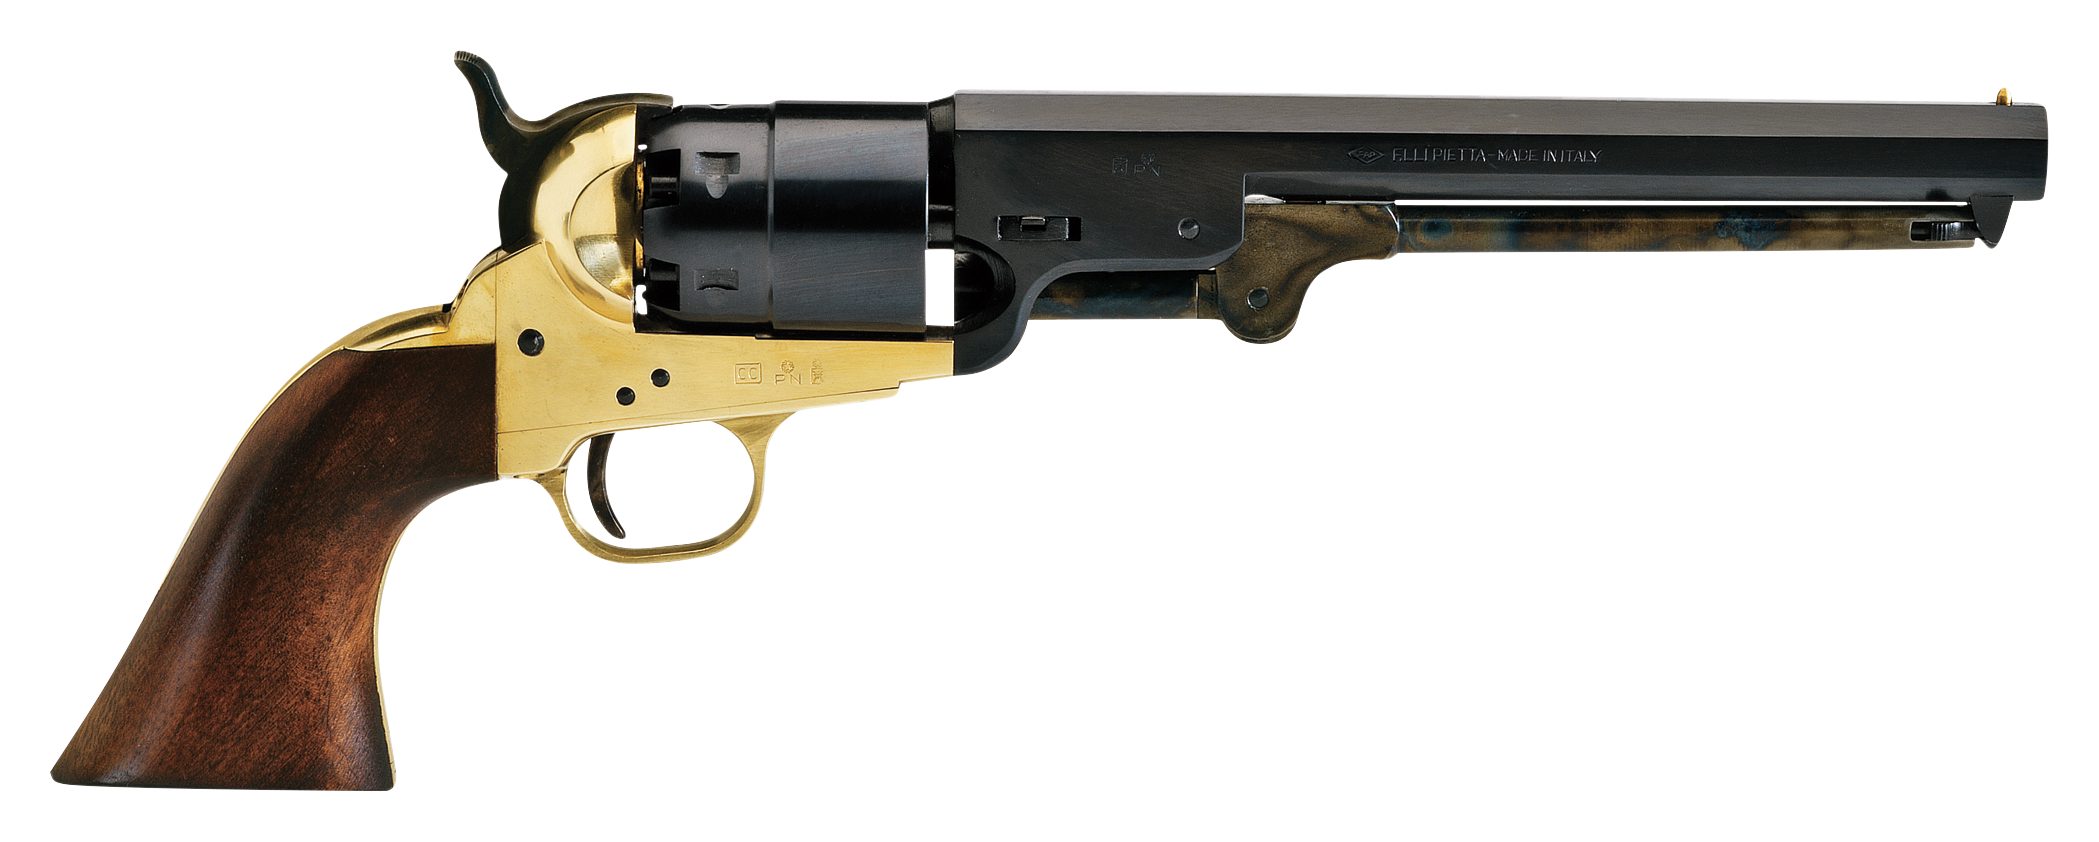 Kentucky Rifle — ReplicaGunStore